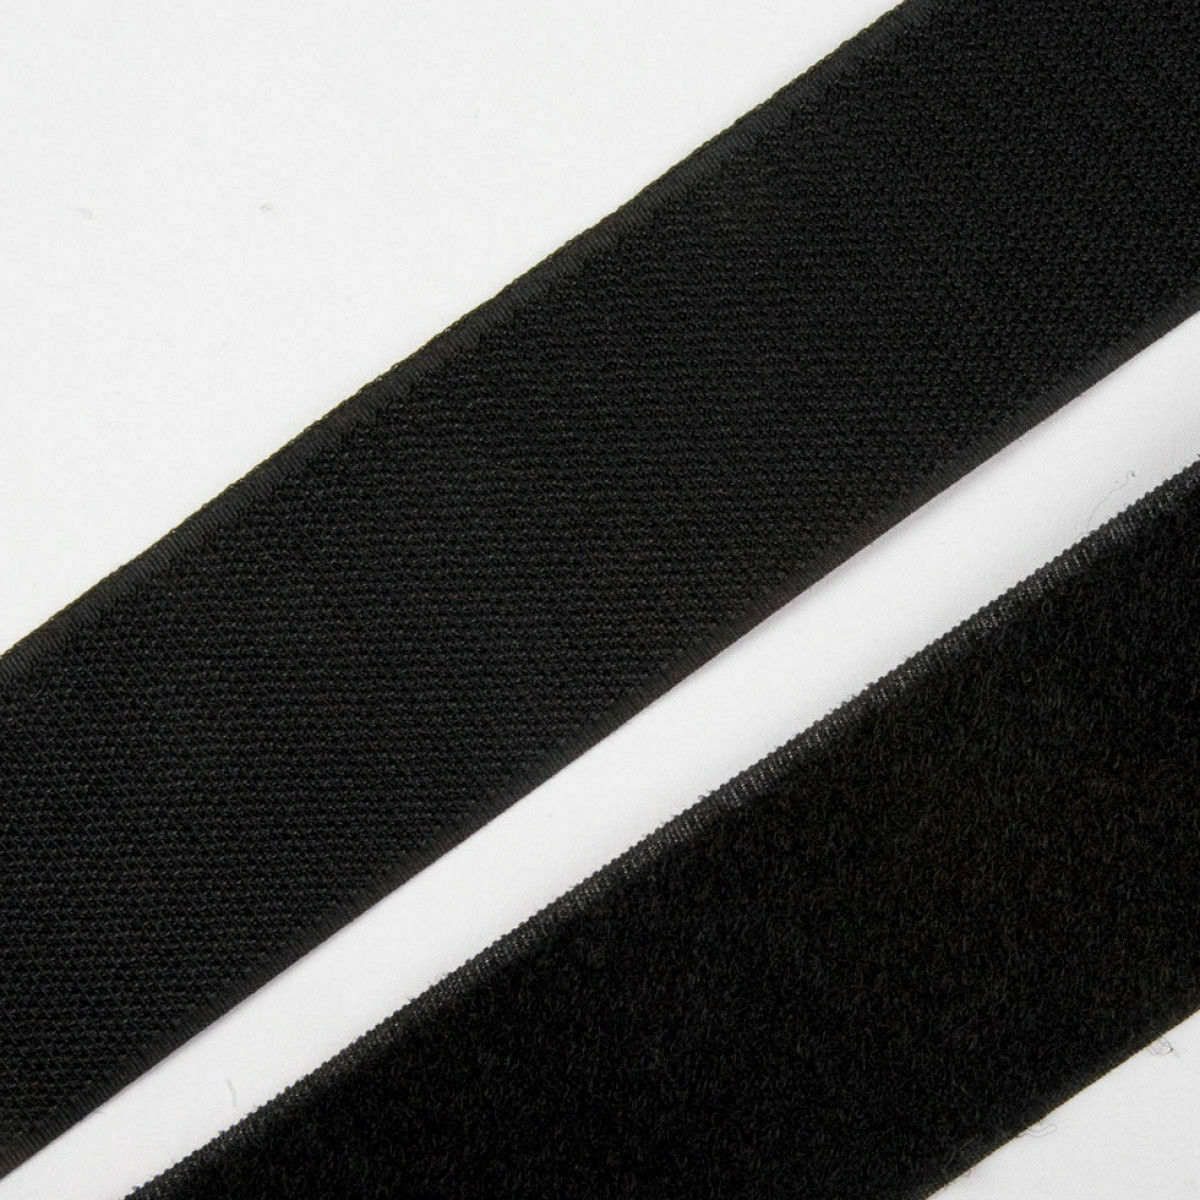 Velcro® Brand 1" Inch Wide Black Hook and Loop - SEW-ON TYPE - 4 FEET - Uncut